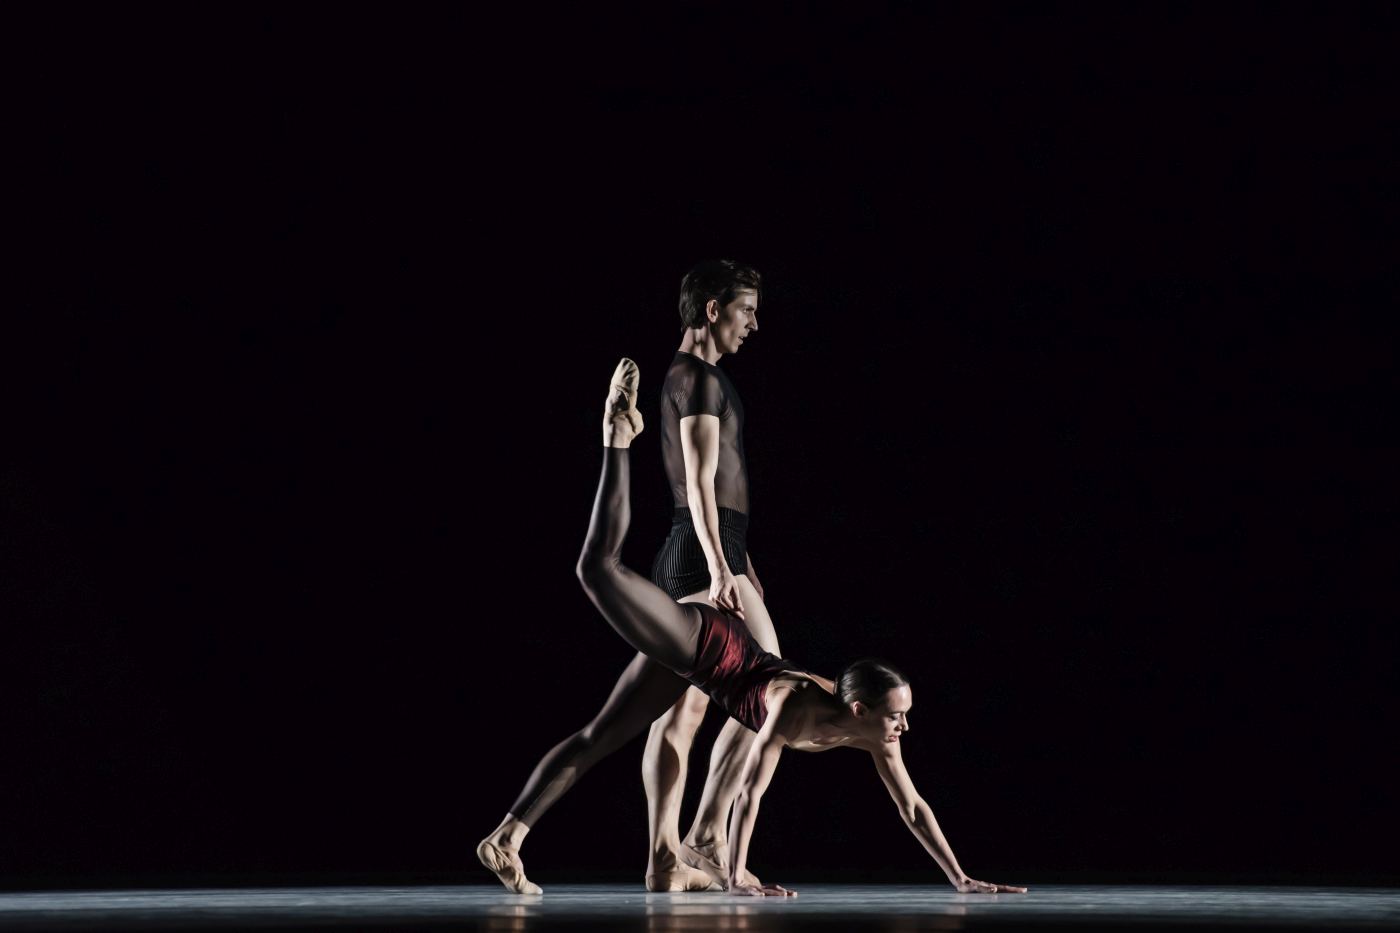 3. A.Zvonař and K.Němečková, ”Bella Figura” by J.Kylián, Czech National Ballet 2022 